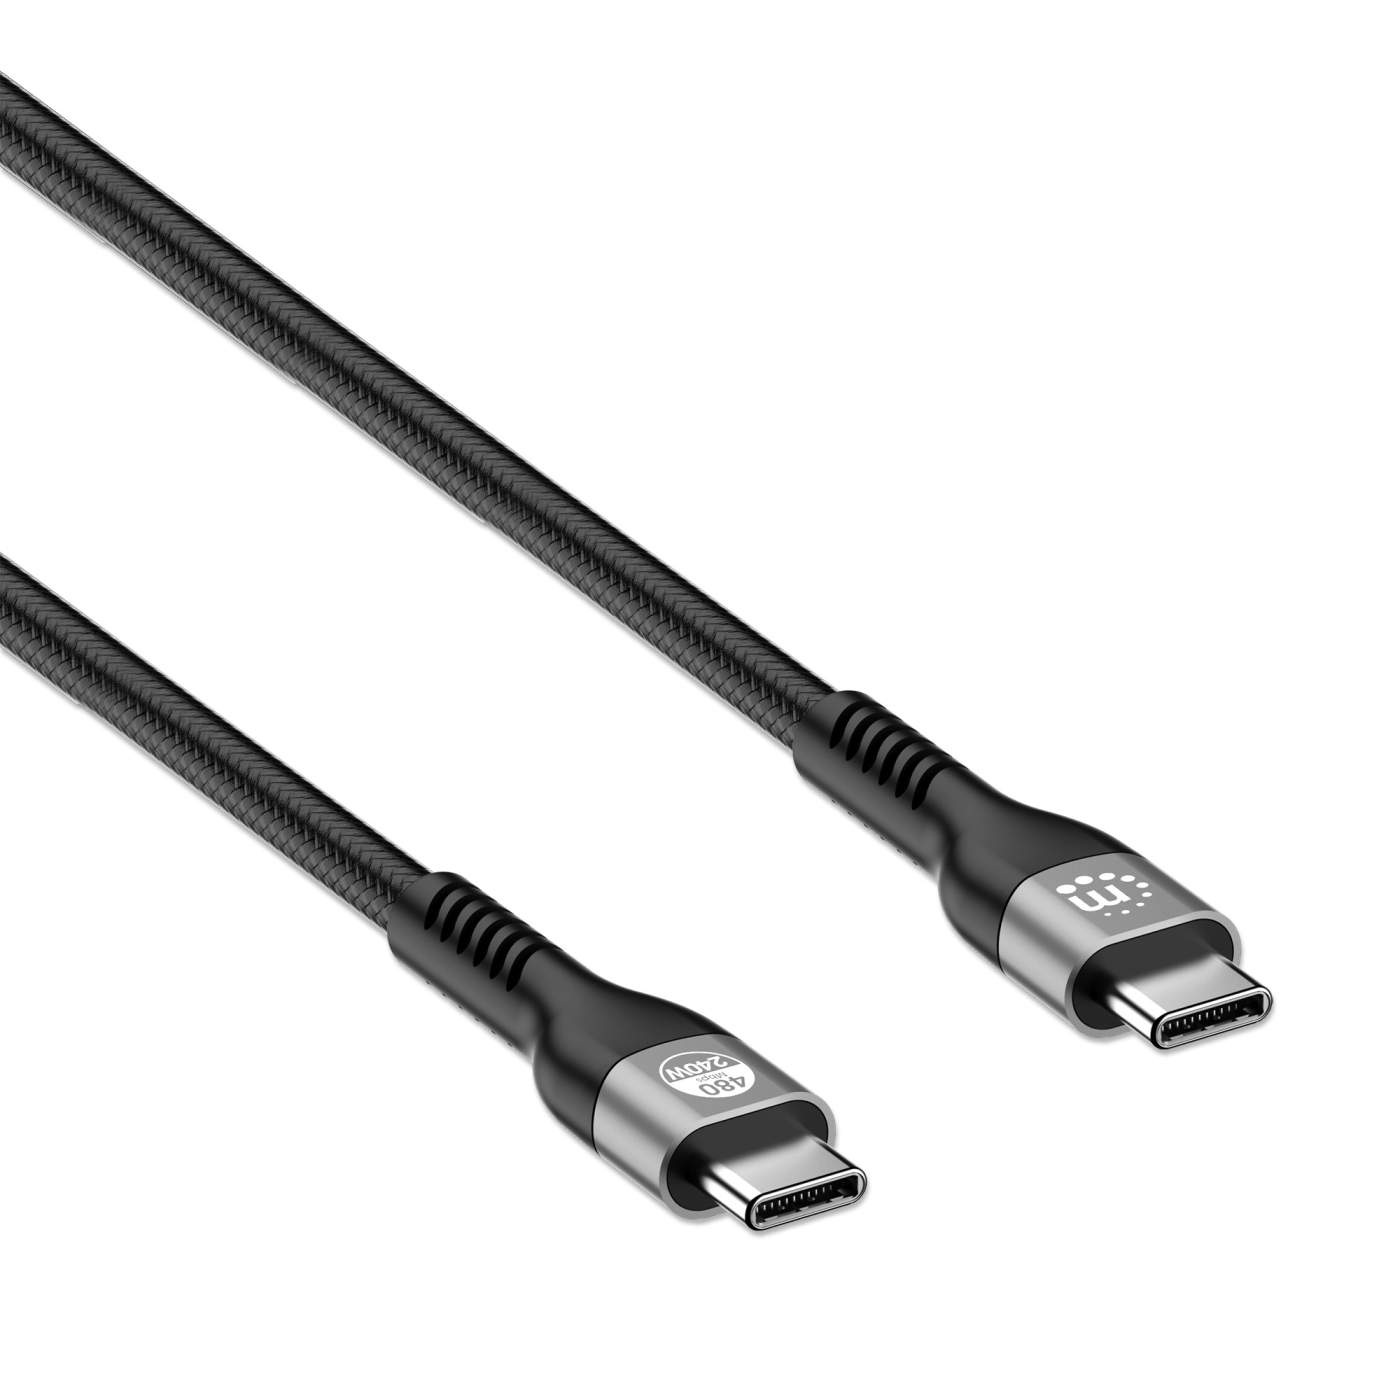 C & E Type C 1.8 m Type C Cable USB 3.1 Type C Gen 2 Fast Charge